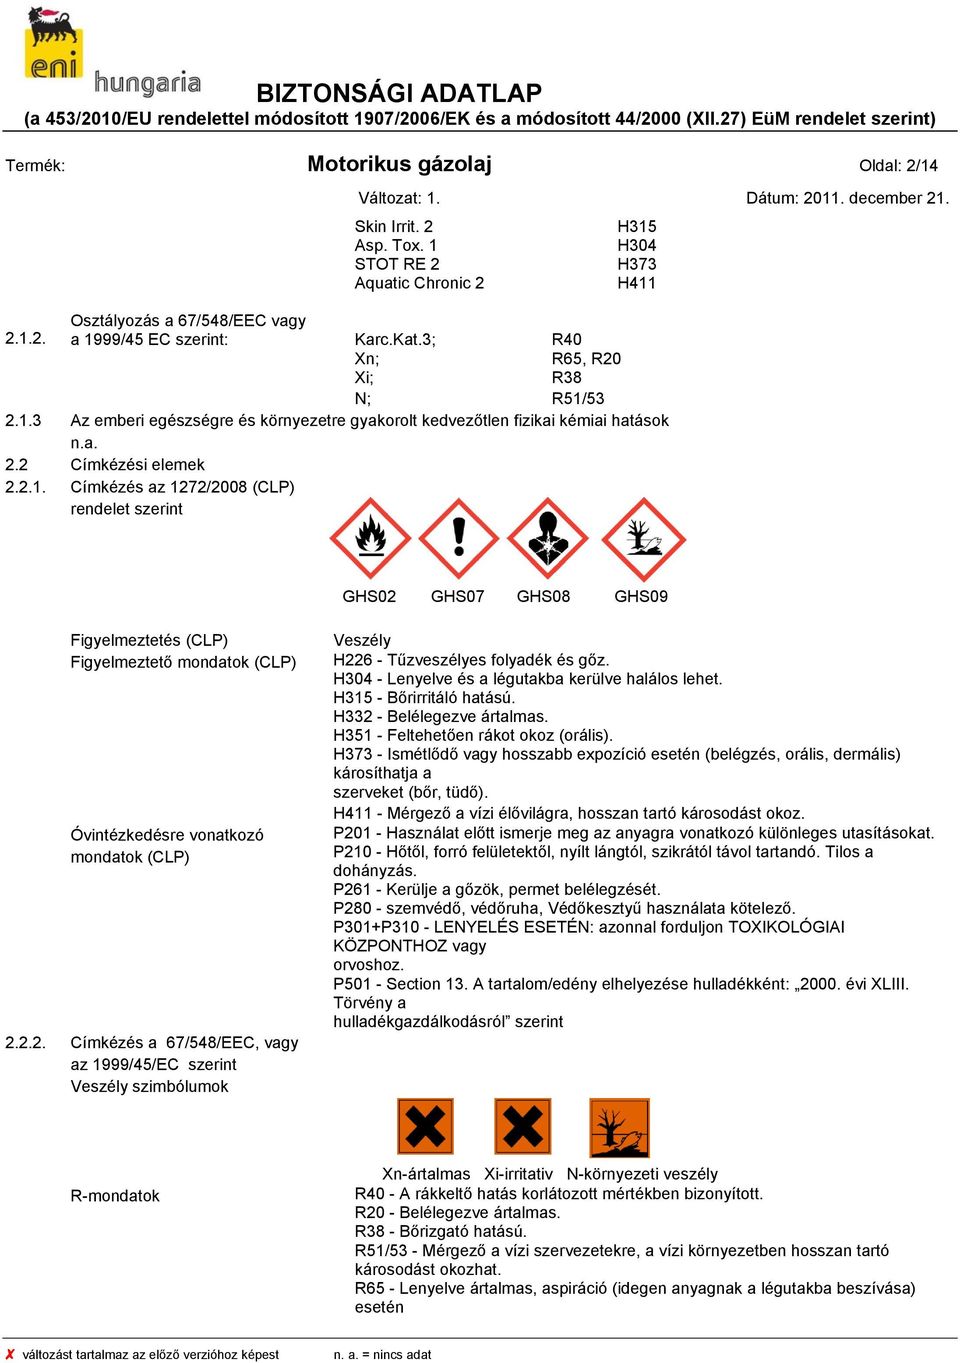 2.2. Címkézés a 67/548/EEC, vagy az 1999/45/EC szerint Veszély szimbólumok Veszély H226 - Tűzveszélyes folyadék és gőz. H304 - Lenyelve és a légutakba kerülve halálos lehet. H315 - Bőrirritáló hatású.